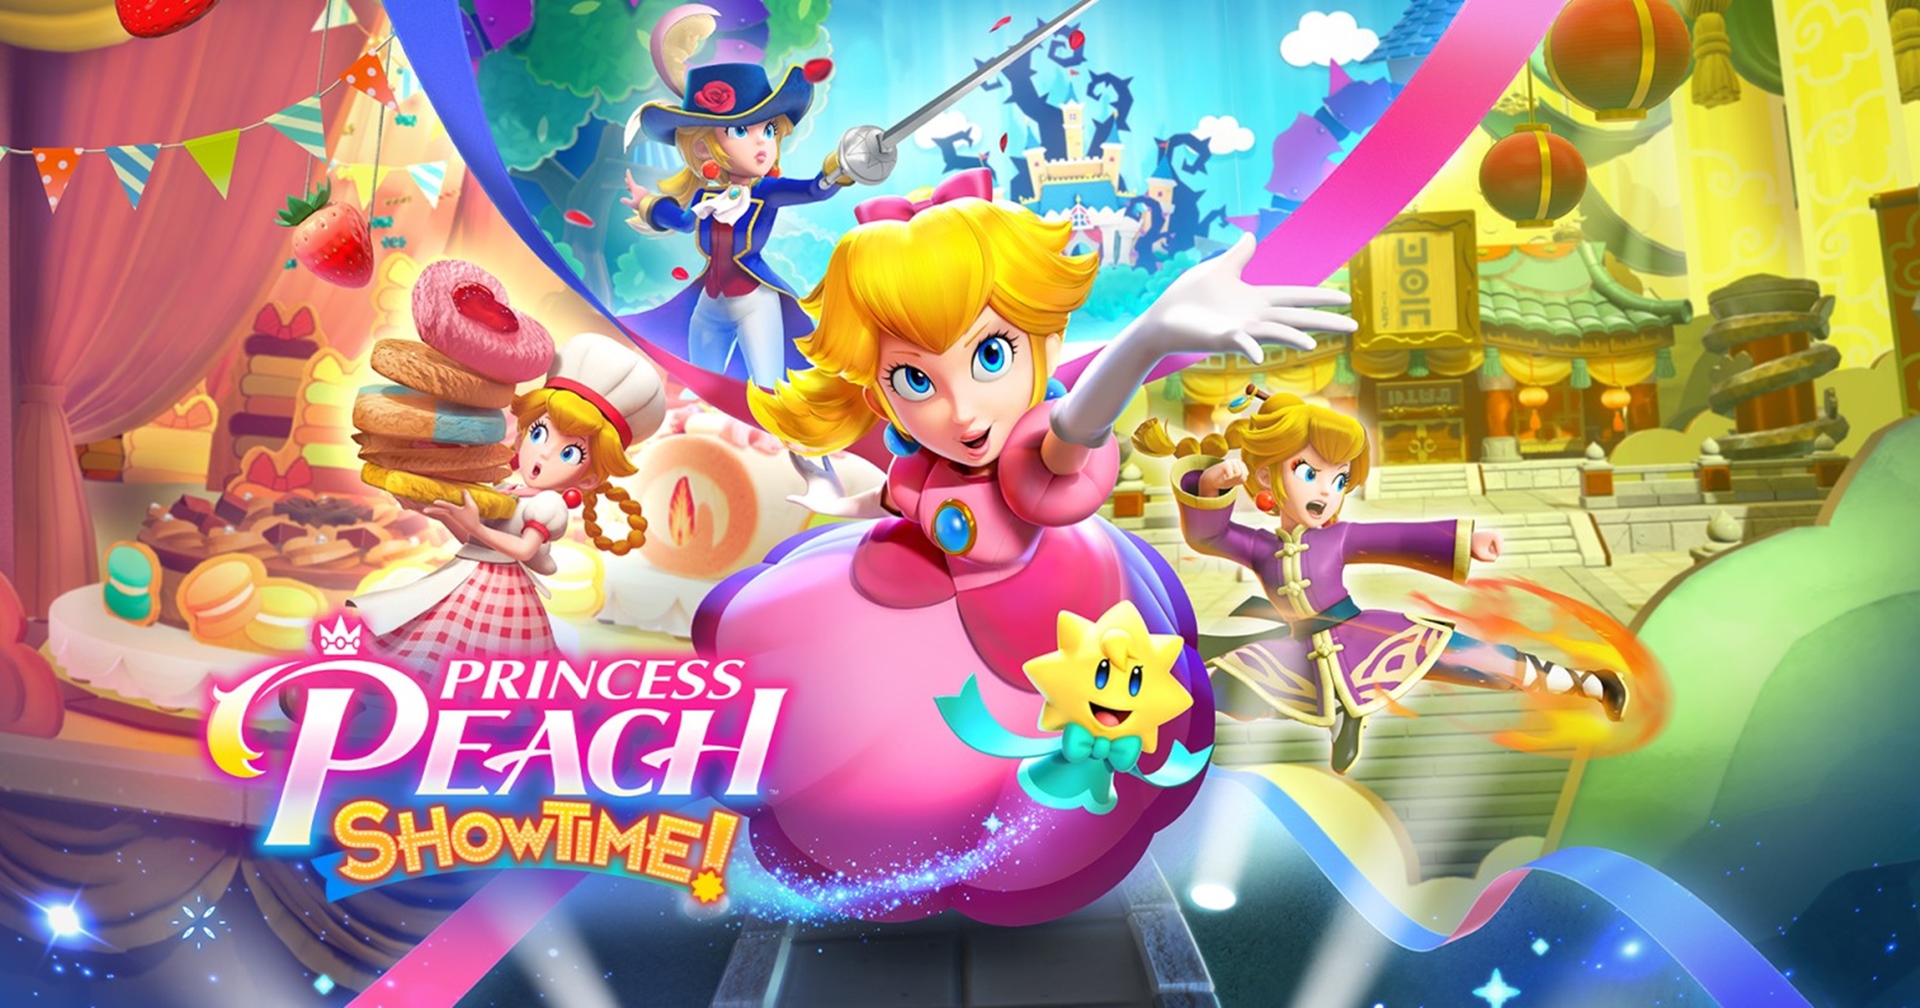 [รีวิวเกม] ‘Princess Peach: Showtime!’ คราวนี้เจ้าหญิงขอลุยเดี่ยว